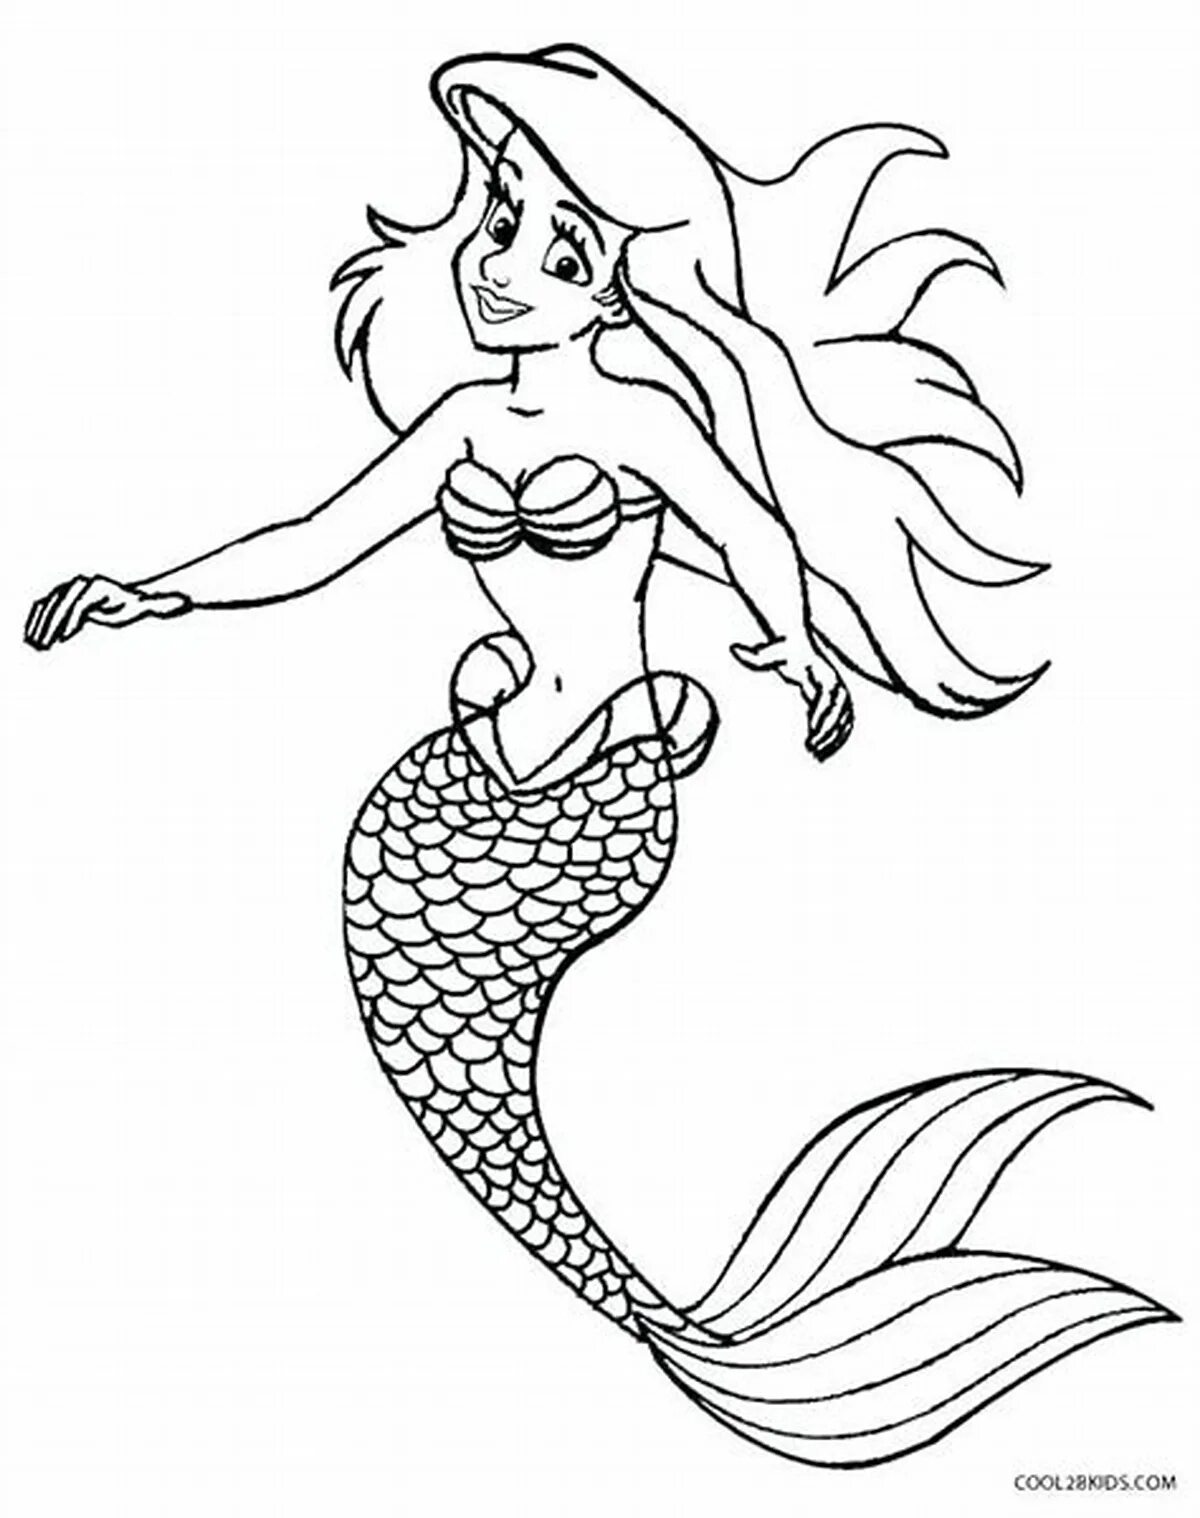 Mermaid pattern #2